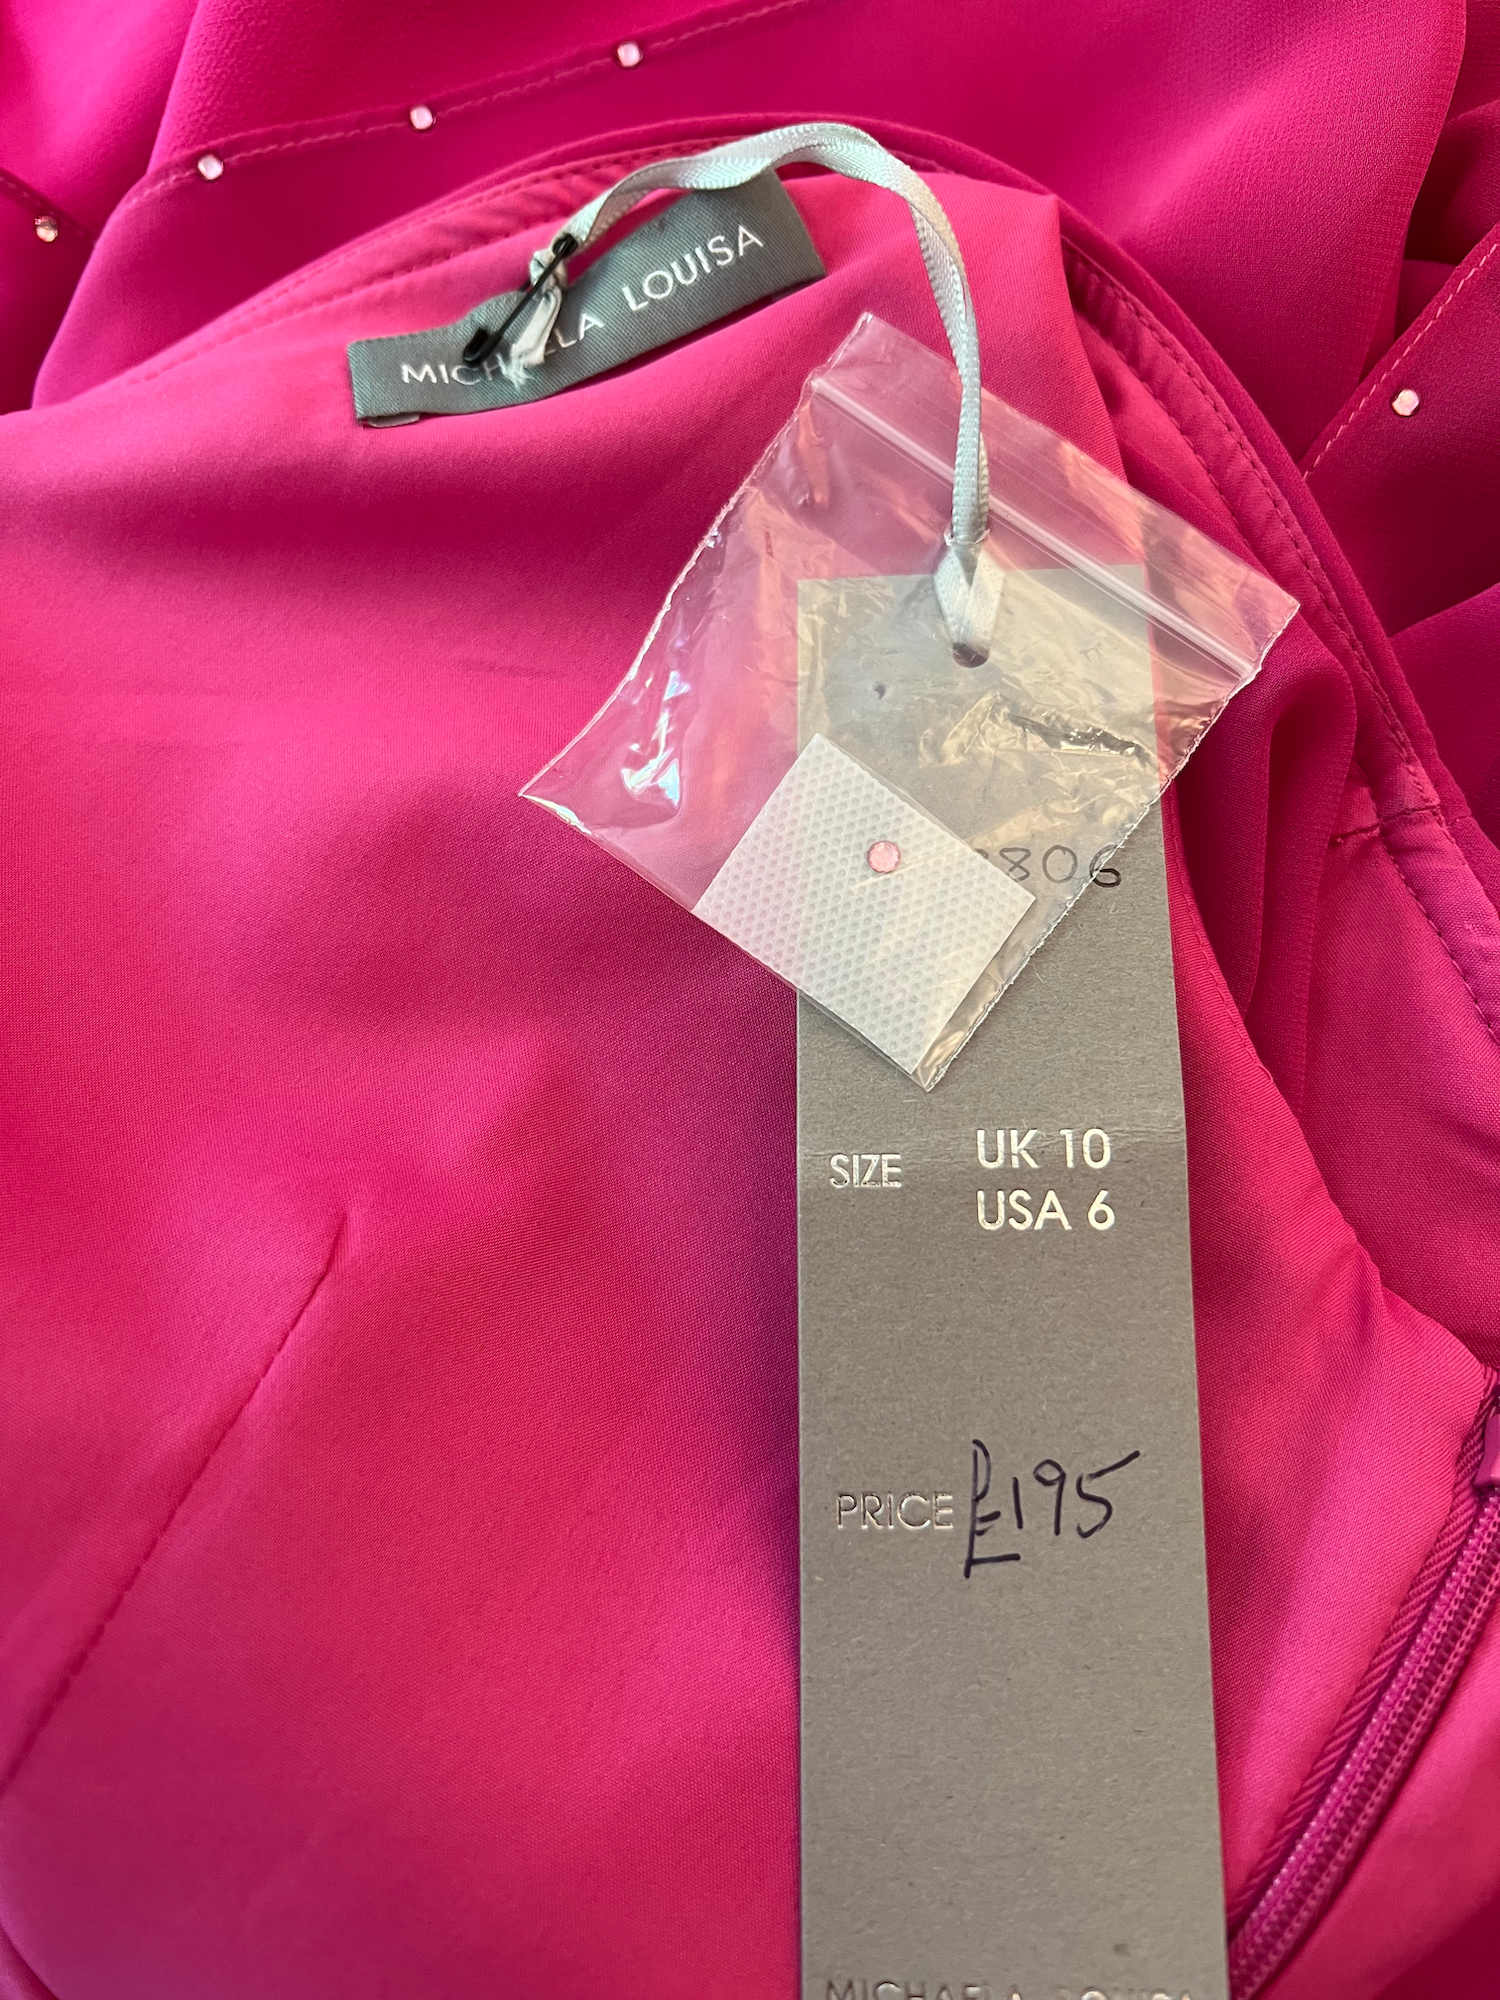 Michaela Louisa Hot Pink Chiffon Layered Dress UK 10 US 6 EU 38 BNWT RRP £195 Timeless Fashions